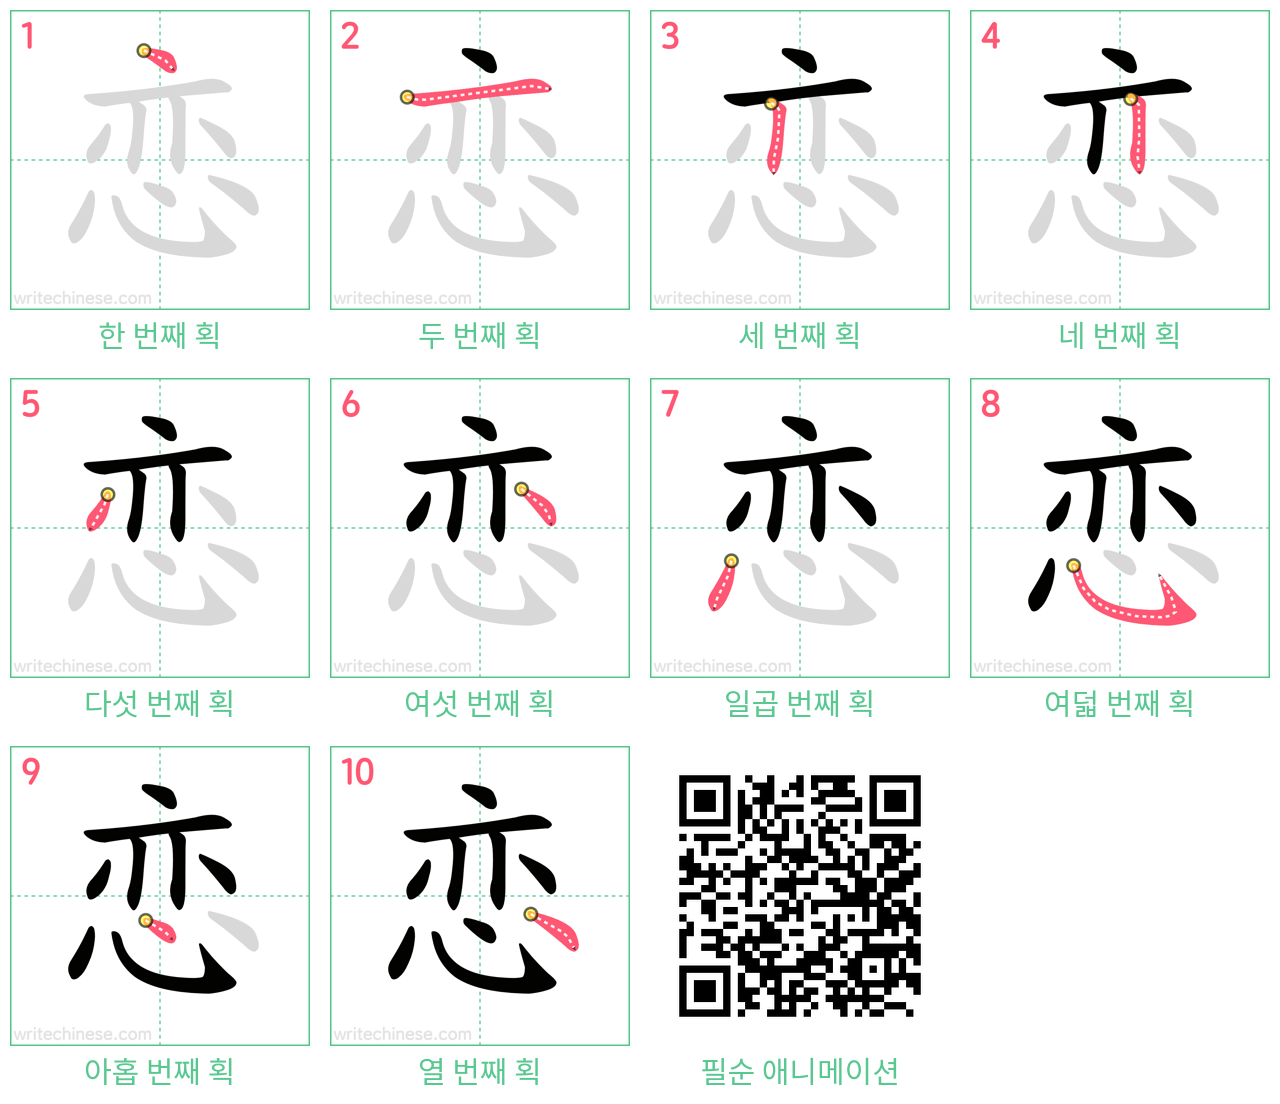 恋 step-by-step stroke order diagrams